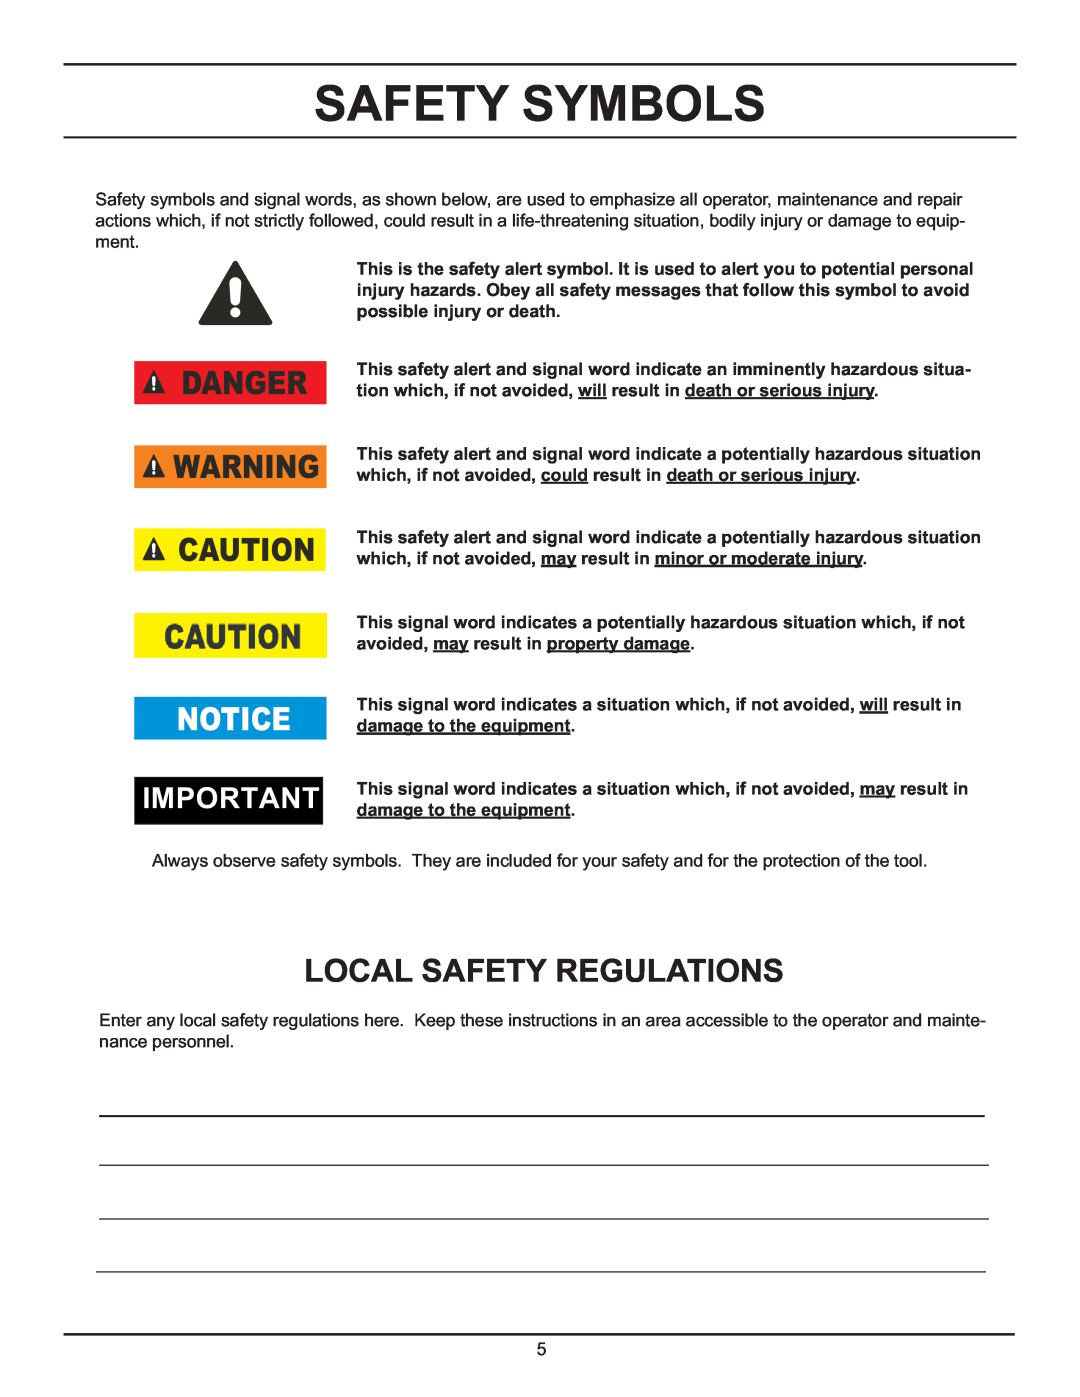 Stanley Black & Decker DS06 manual Safety Symbols, Danger, Local Safety Regulations 